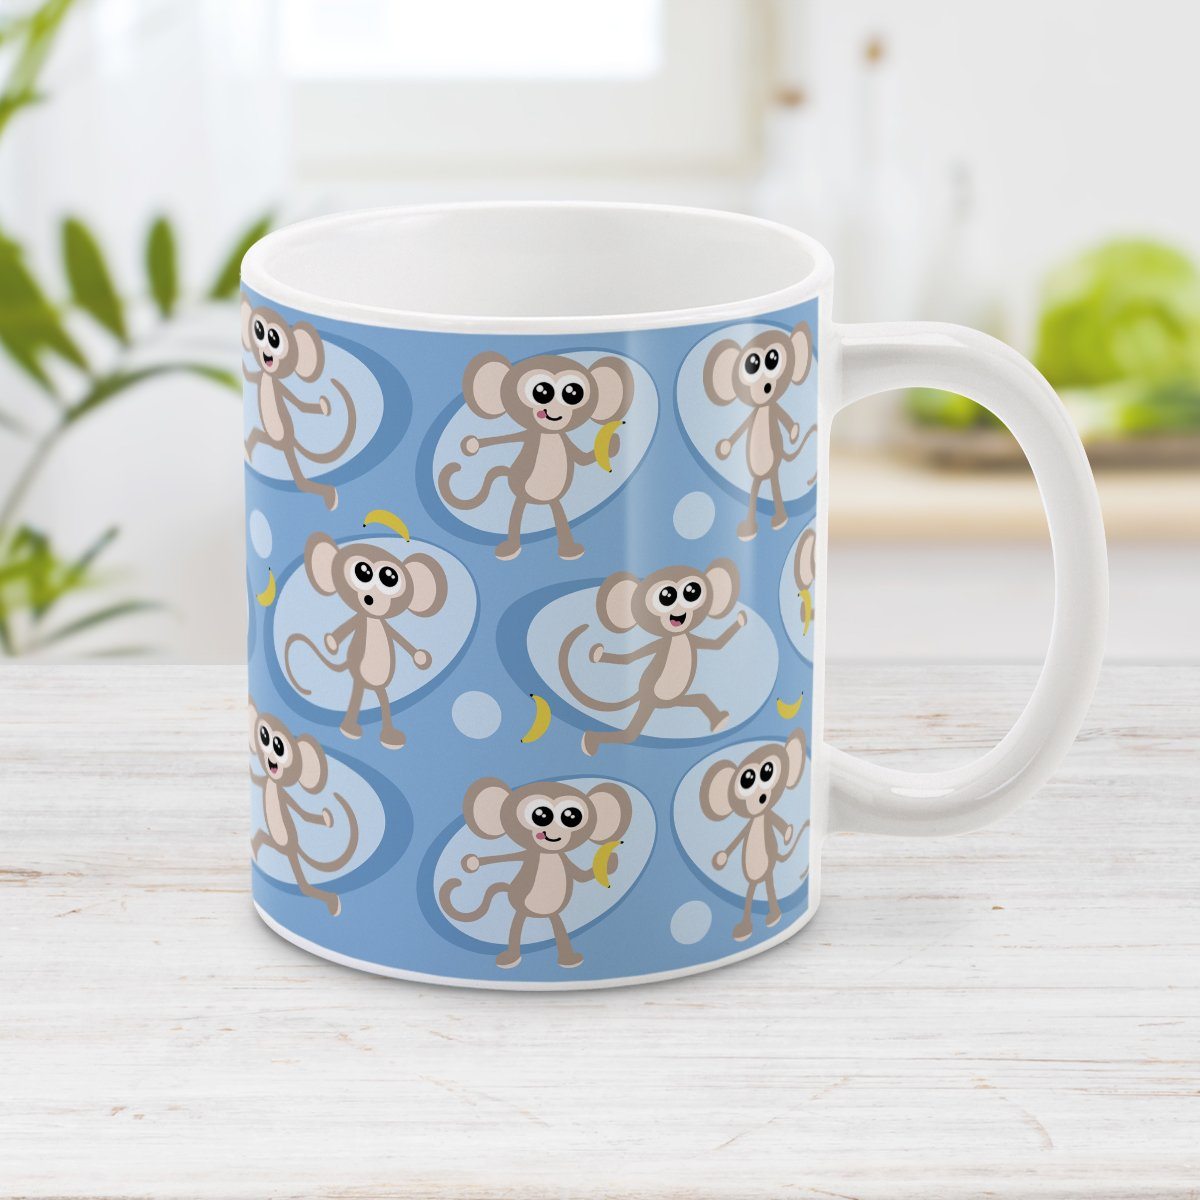 Cute Blue Monkey Pattern Mug (11oz) at Amy's Coffee Mugs